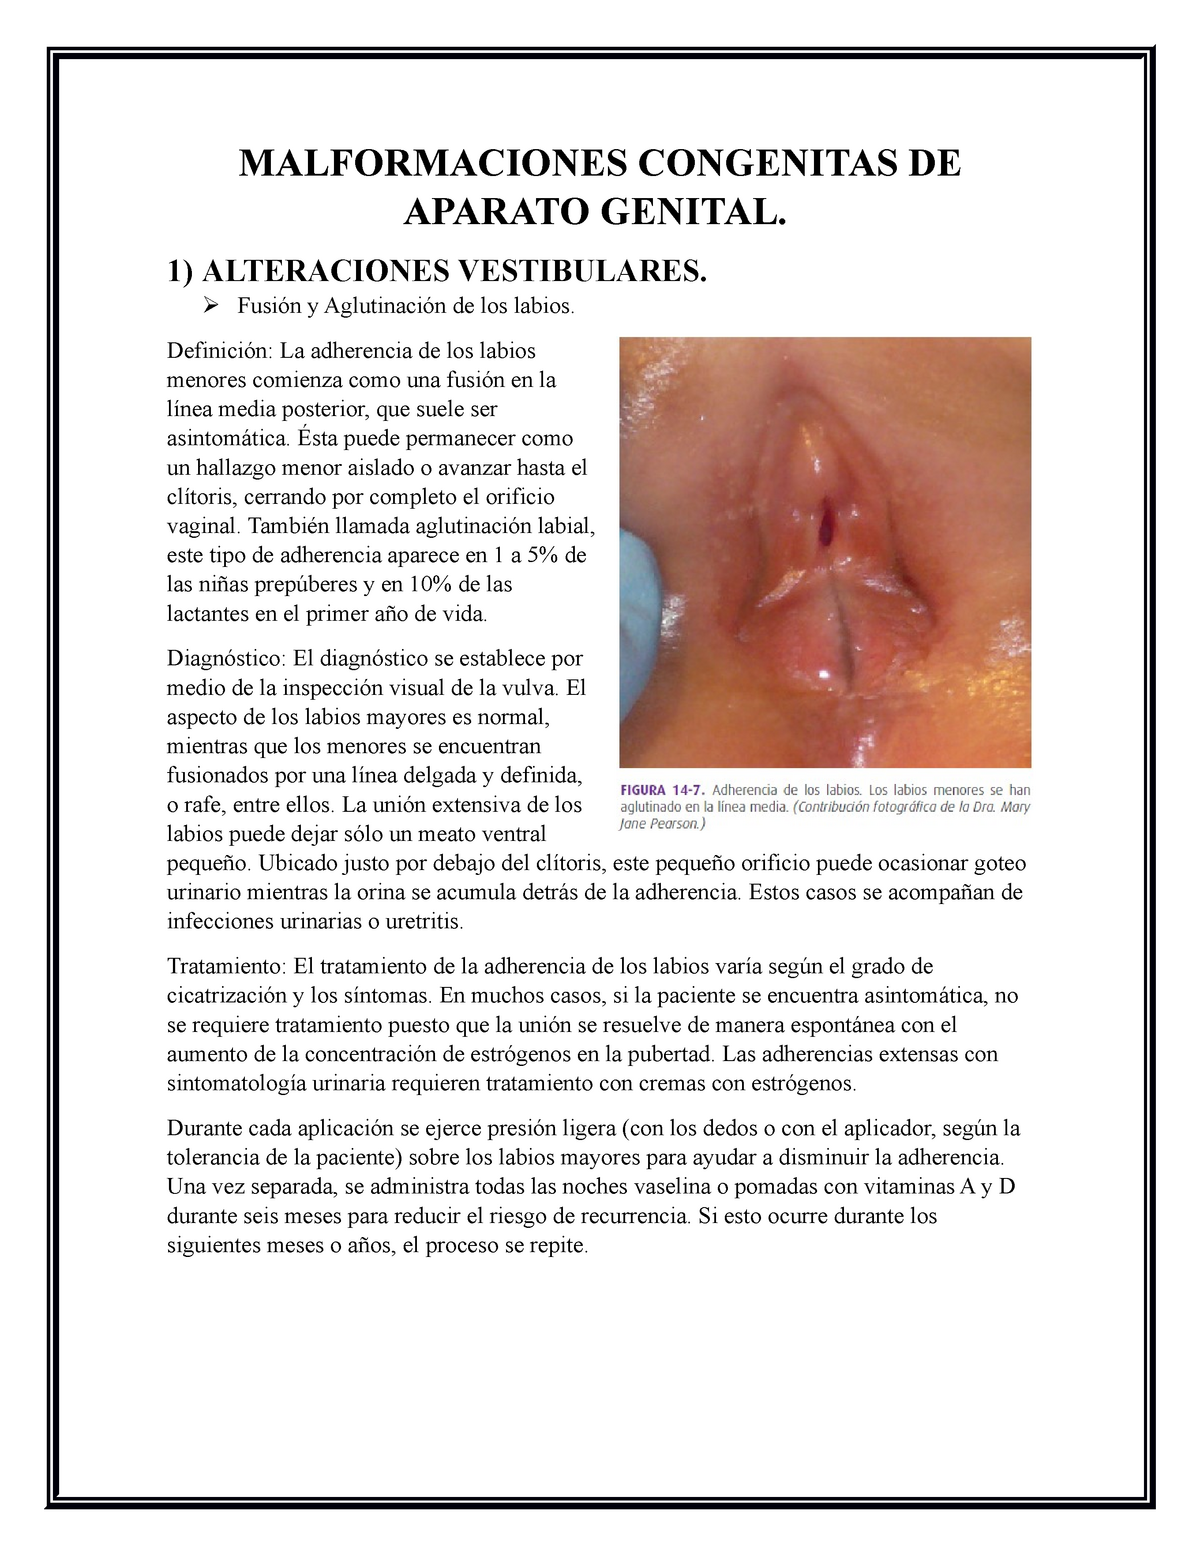 Tema Ii Enfermedades Vulvares Y Vaginales Malformaciones Congenitas De Aparato Genital